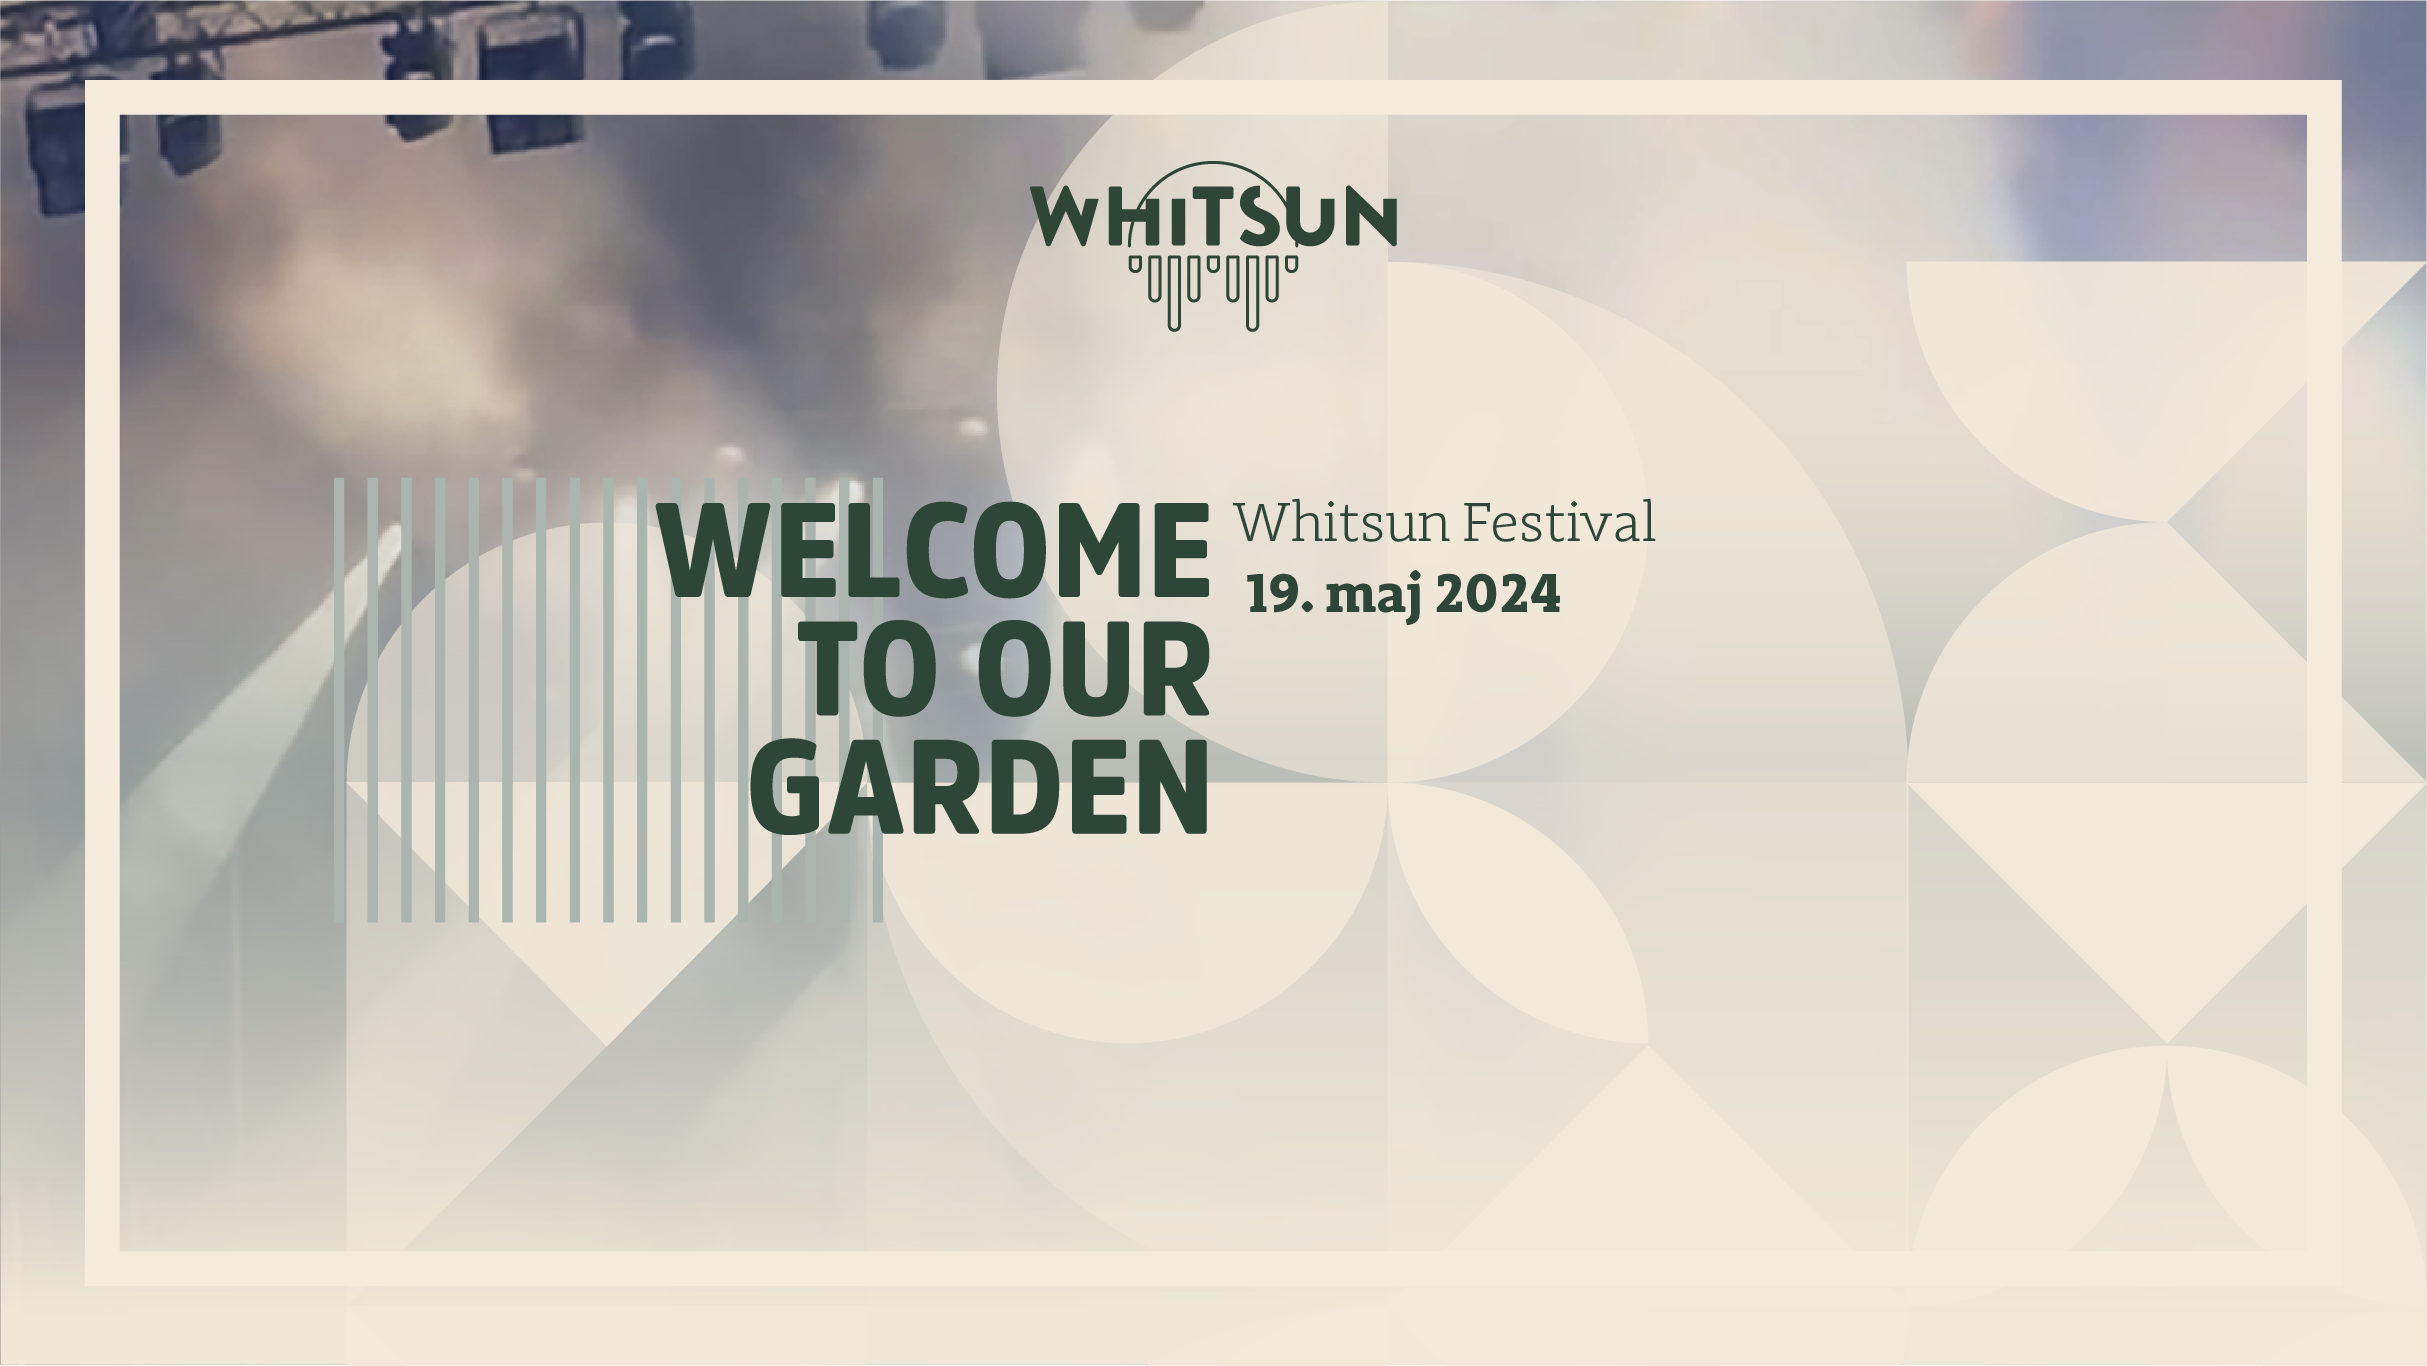 Whitsun Festival presale information on freepresalepasswords.com